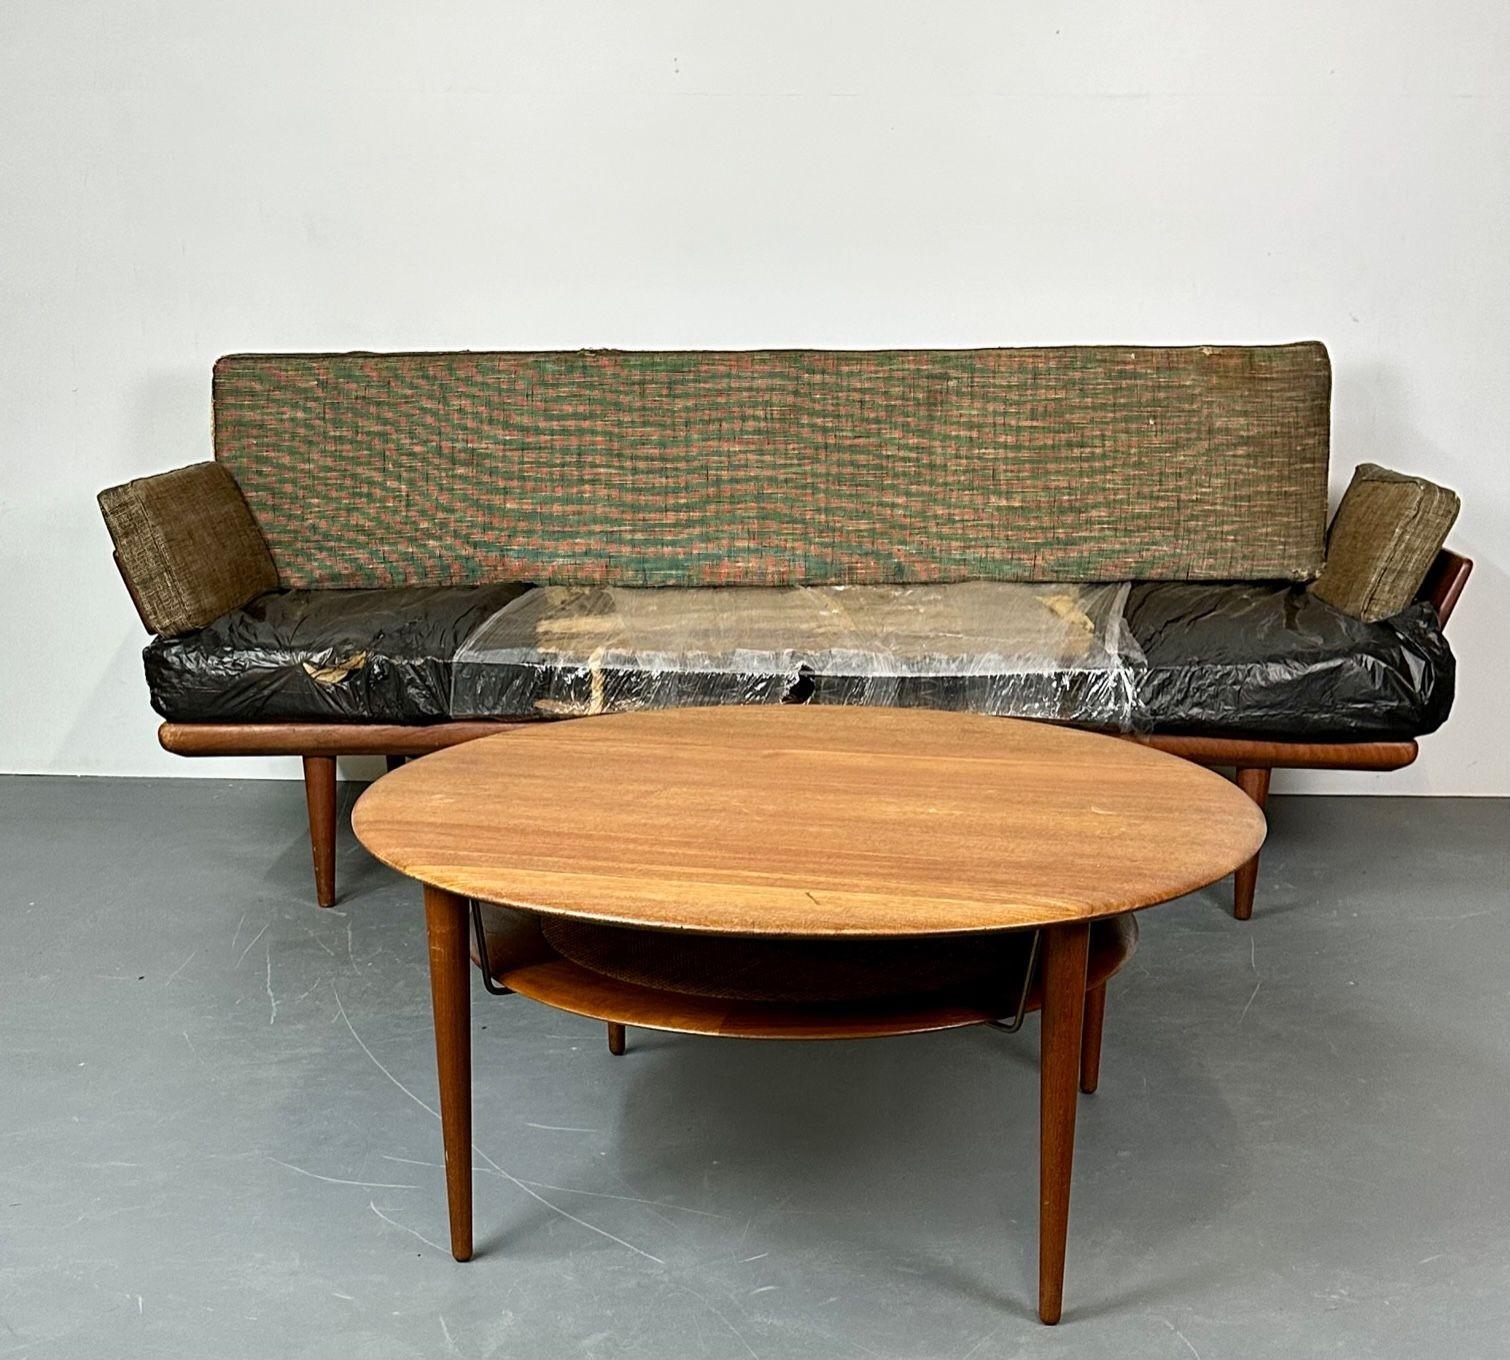 Modernes Mid-Century-Sofa von Peter Hvidt, Orla Molgaard für John Stuart, 1960er Jahre (Polster)